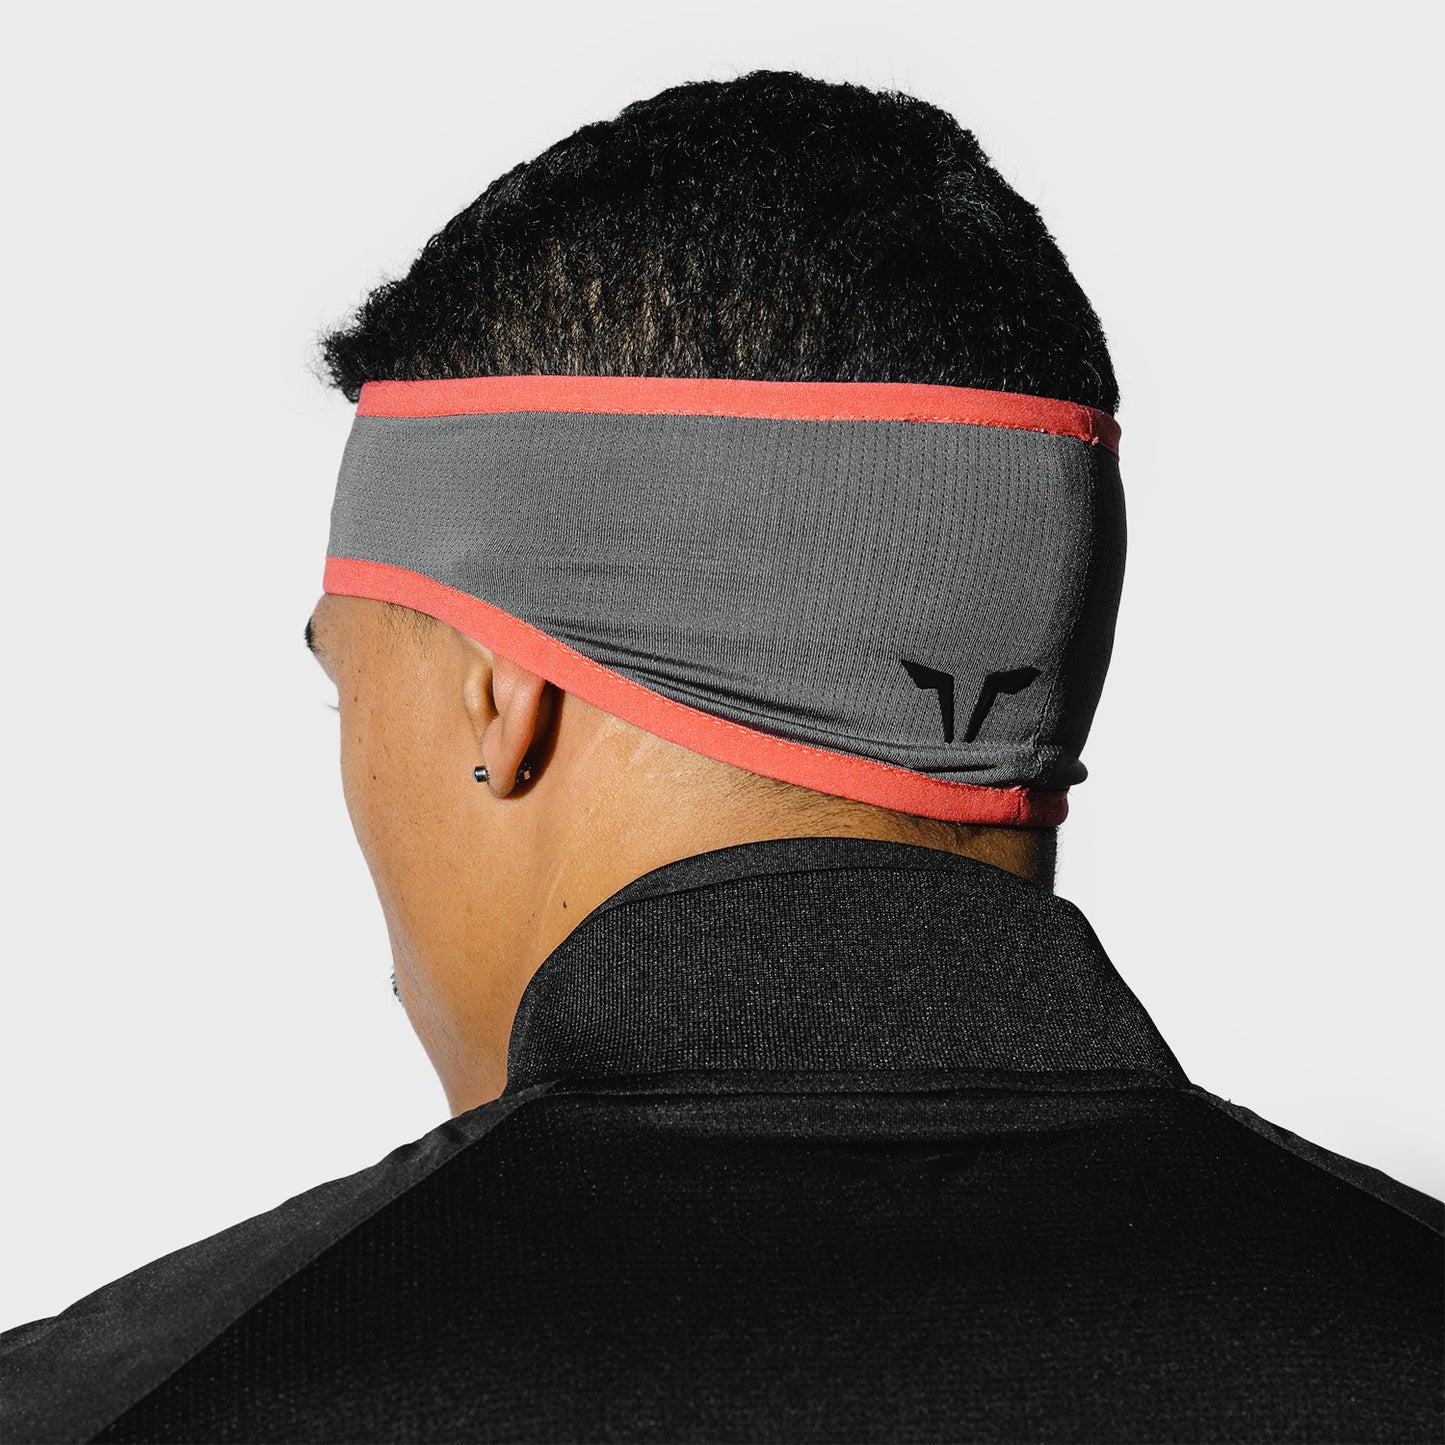 squatwolf-gym-wear-lab360-headband-dark-gull-grey-workout